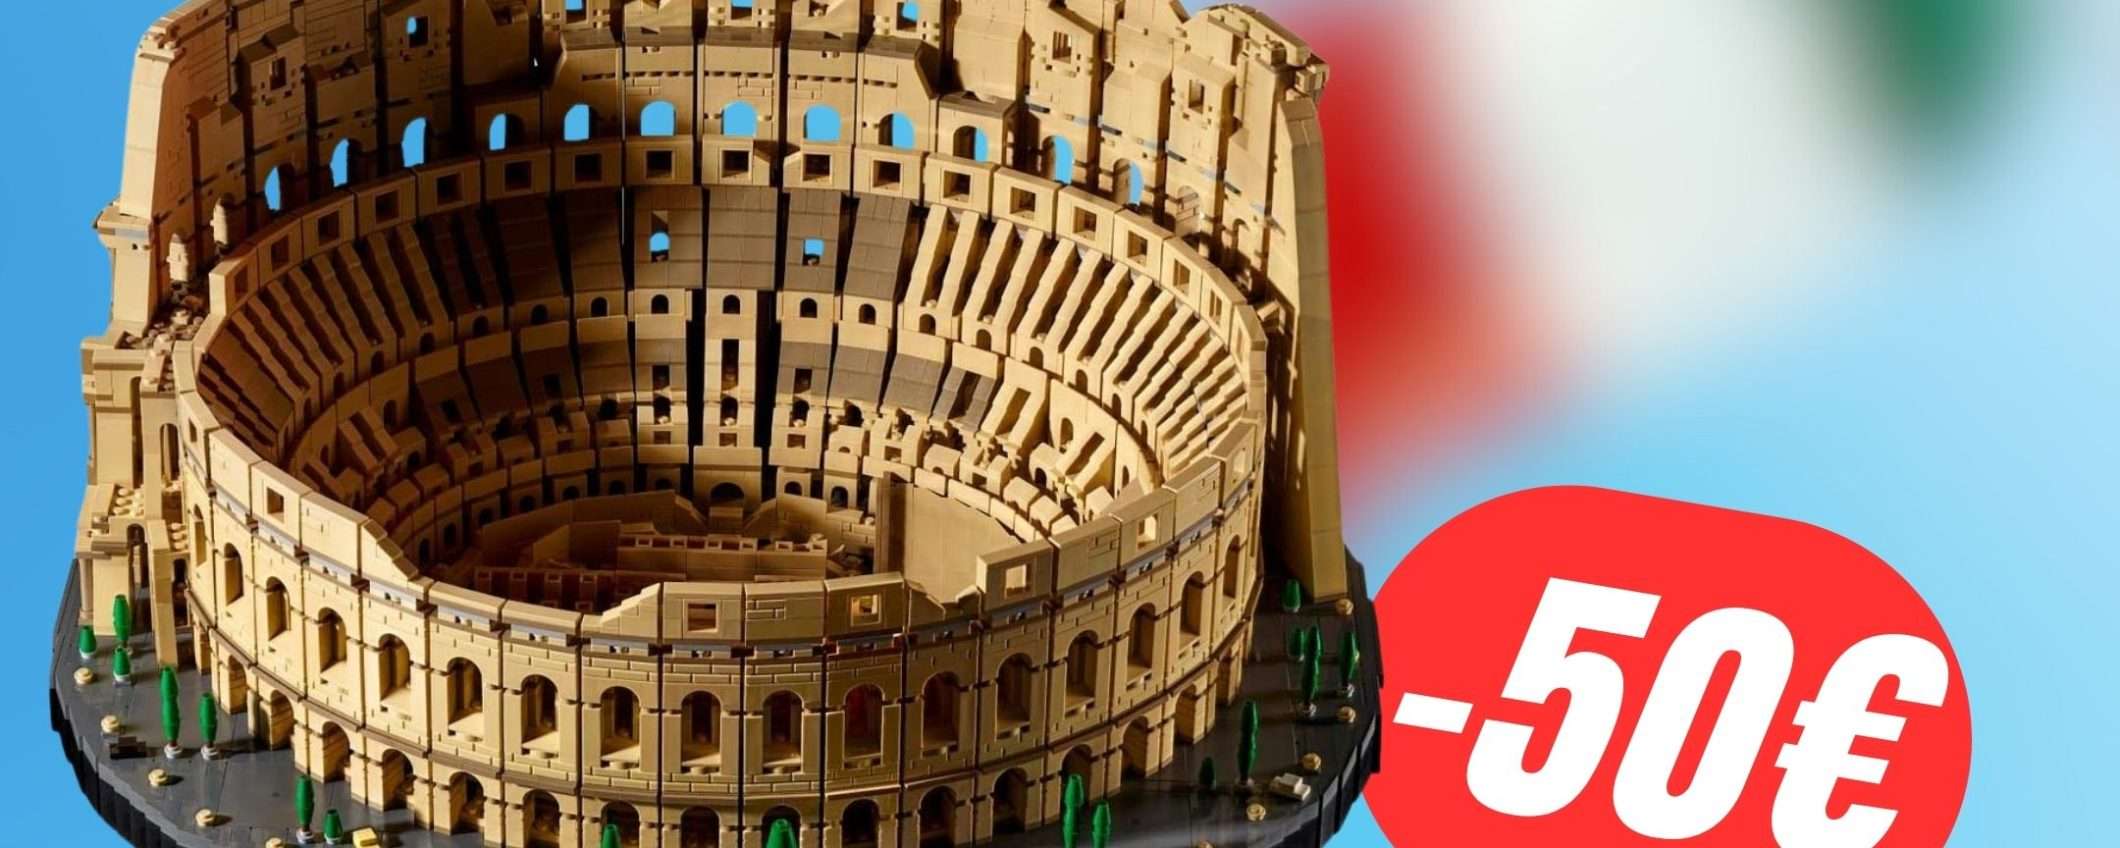 Il set LEGO Il Colosseo è SCONTATO di 50€!